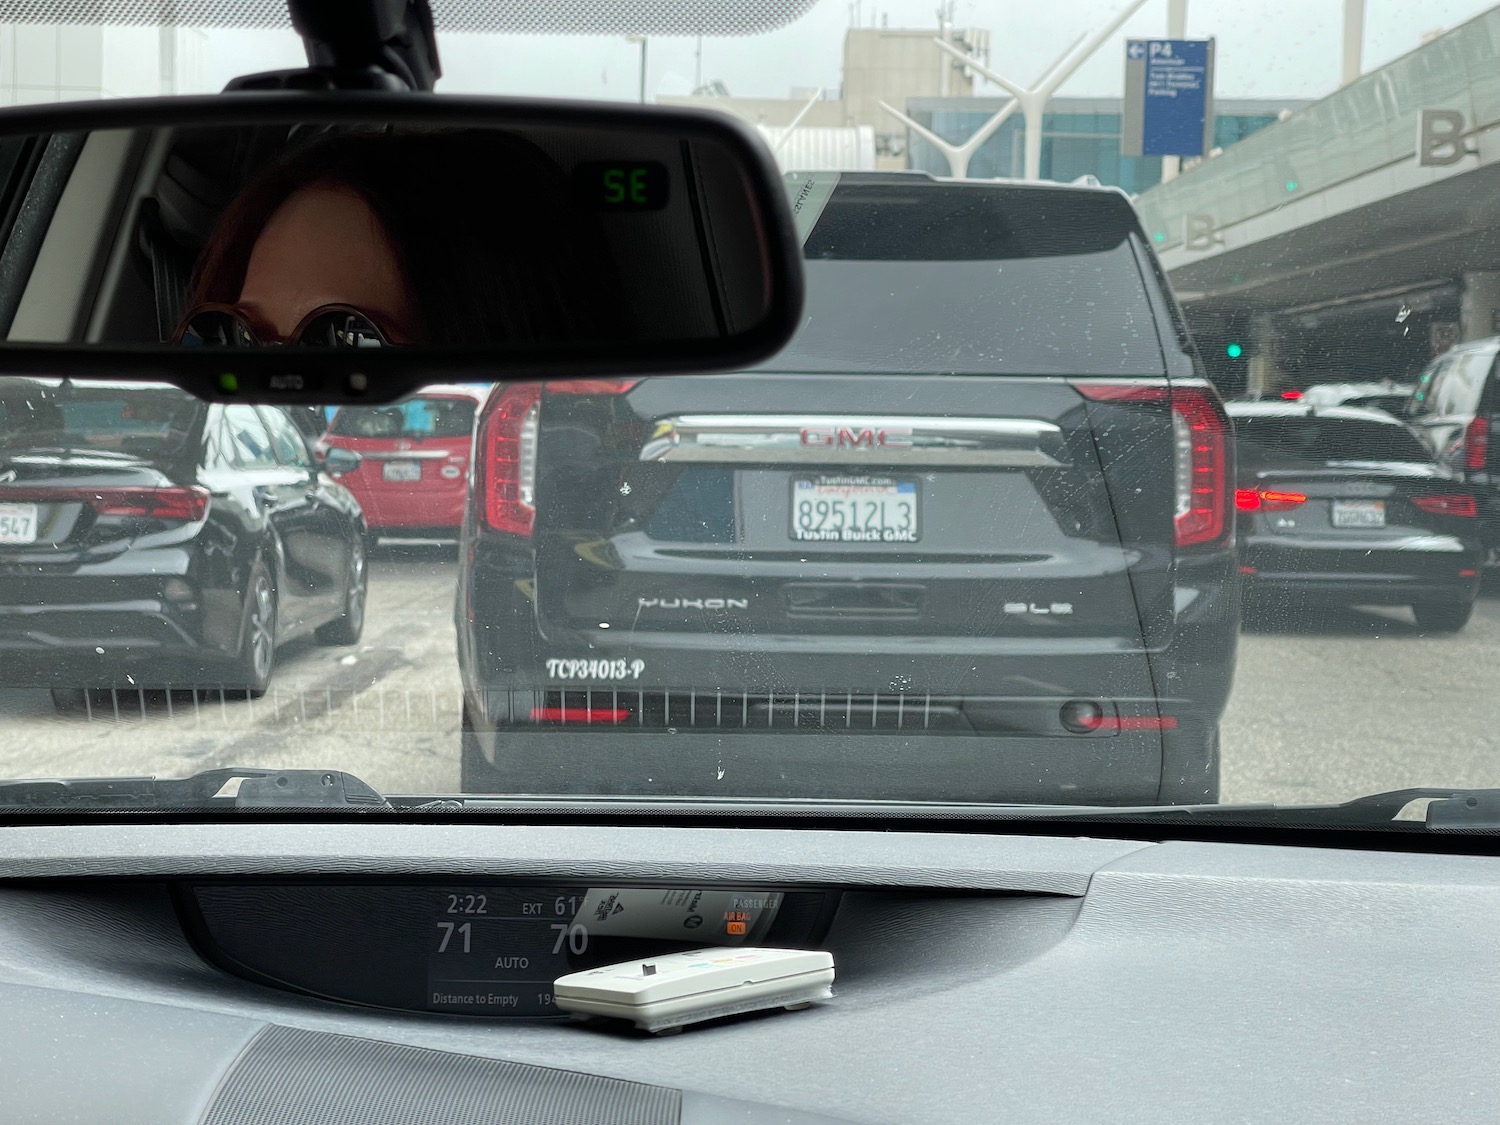 a rear view mirror of a car